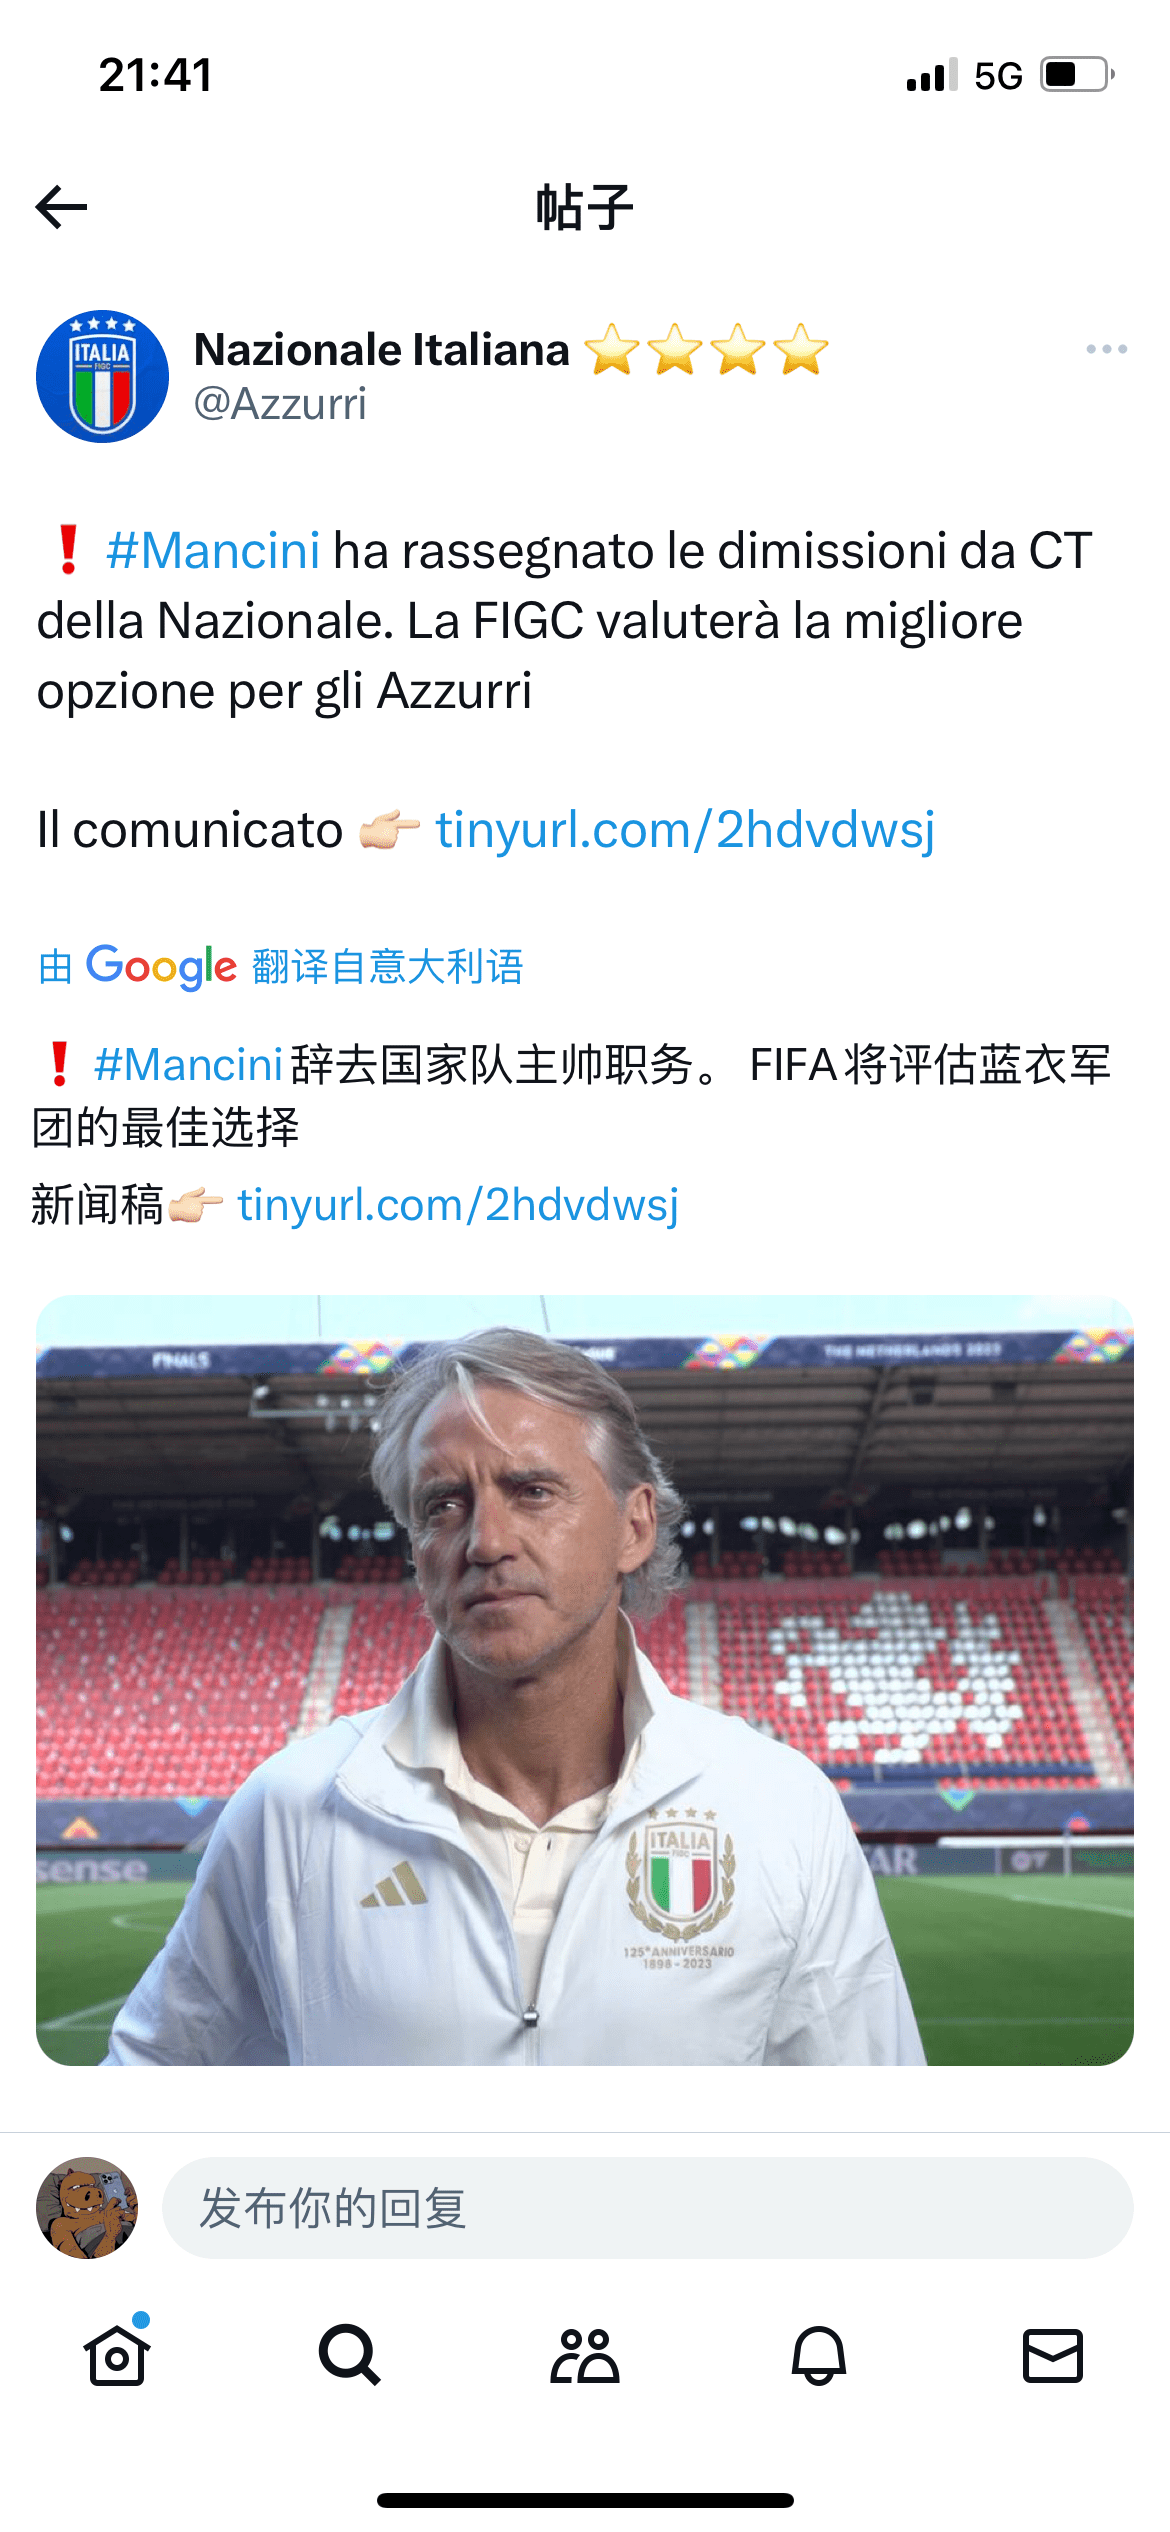 手机酷狗歌词:曼奇尼辞去意大利国家队主帅职务 新教练未来几天内公布